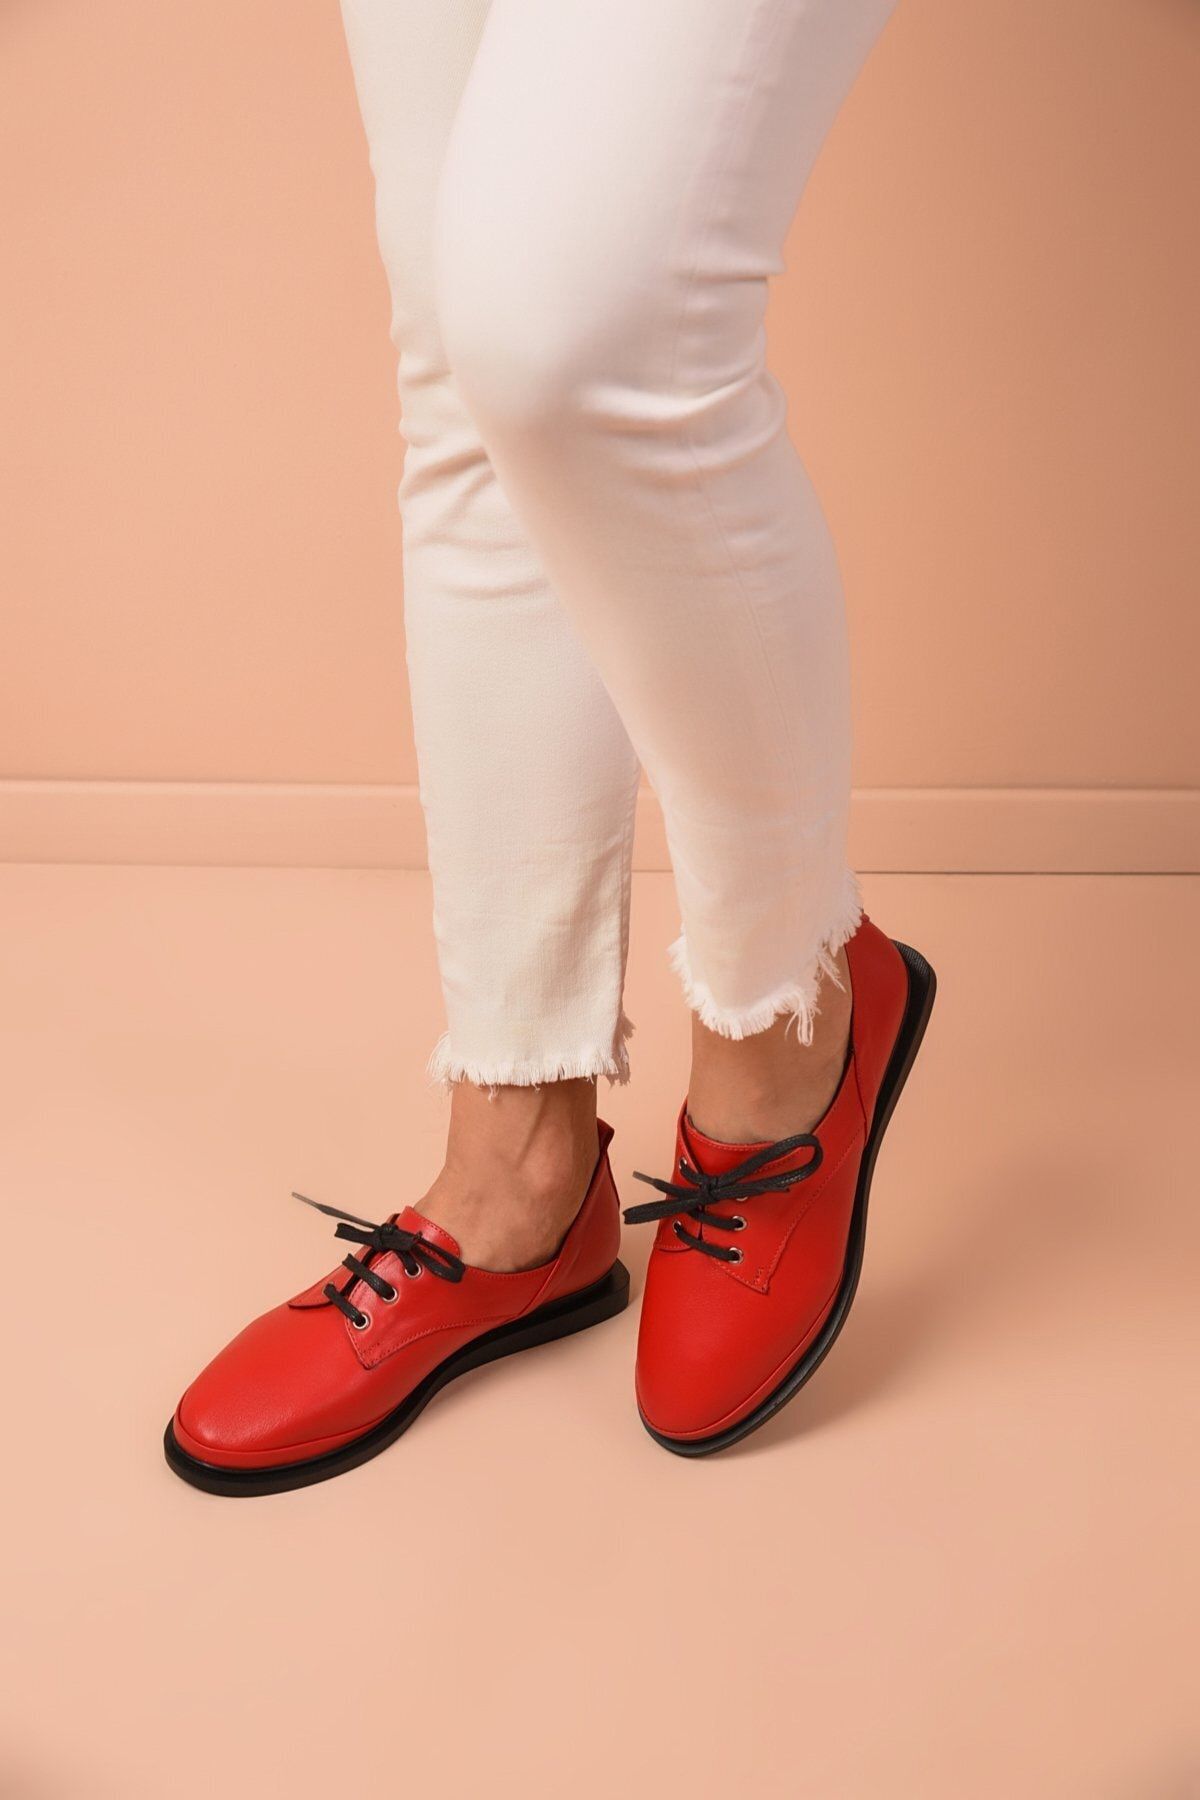 Shoes Time Kadın Kırmızı Deri Günlük Ayakkabı 20k 172